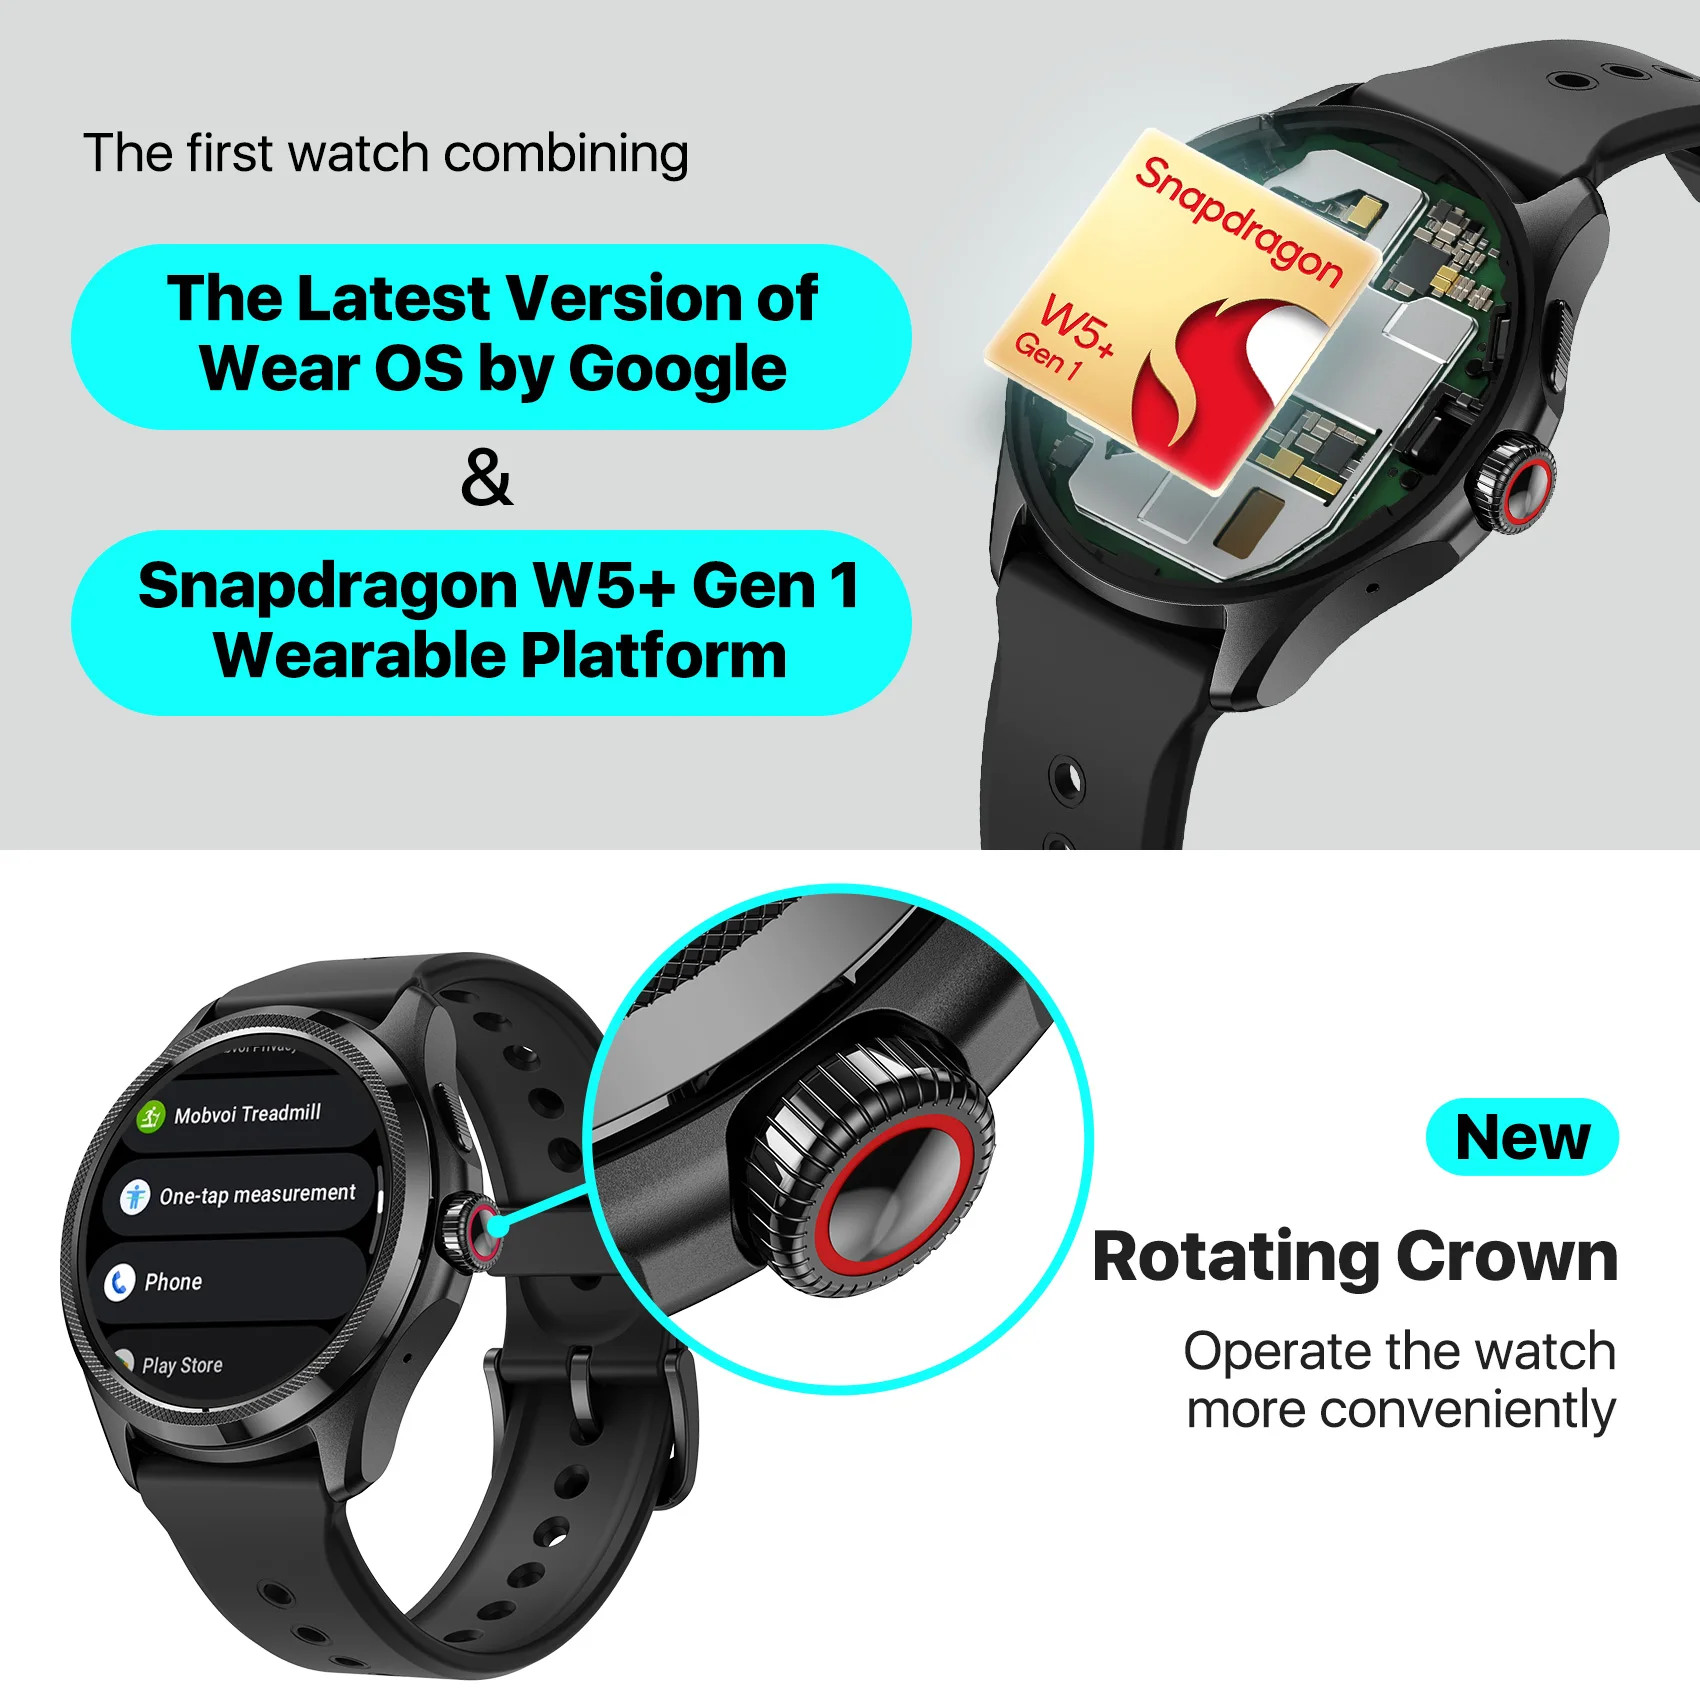 Ticwatch pro 5 nést OS chytré hodinky postaven 100+ sportovní režimech 5ATM water-resistance kompas NFC a 80hrs baterie život pro Android